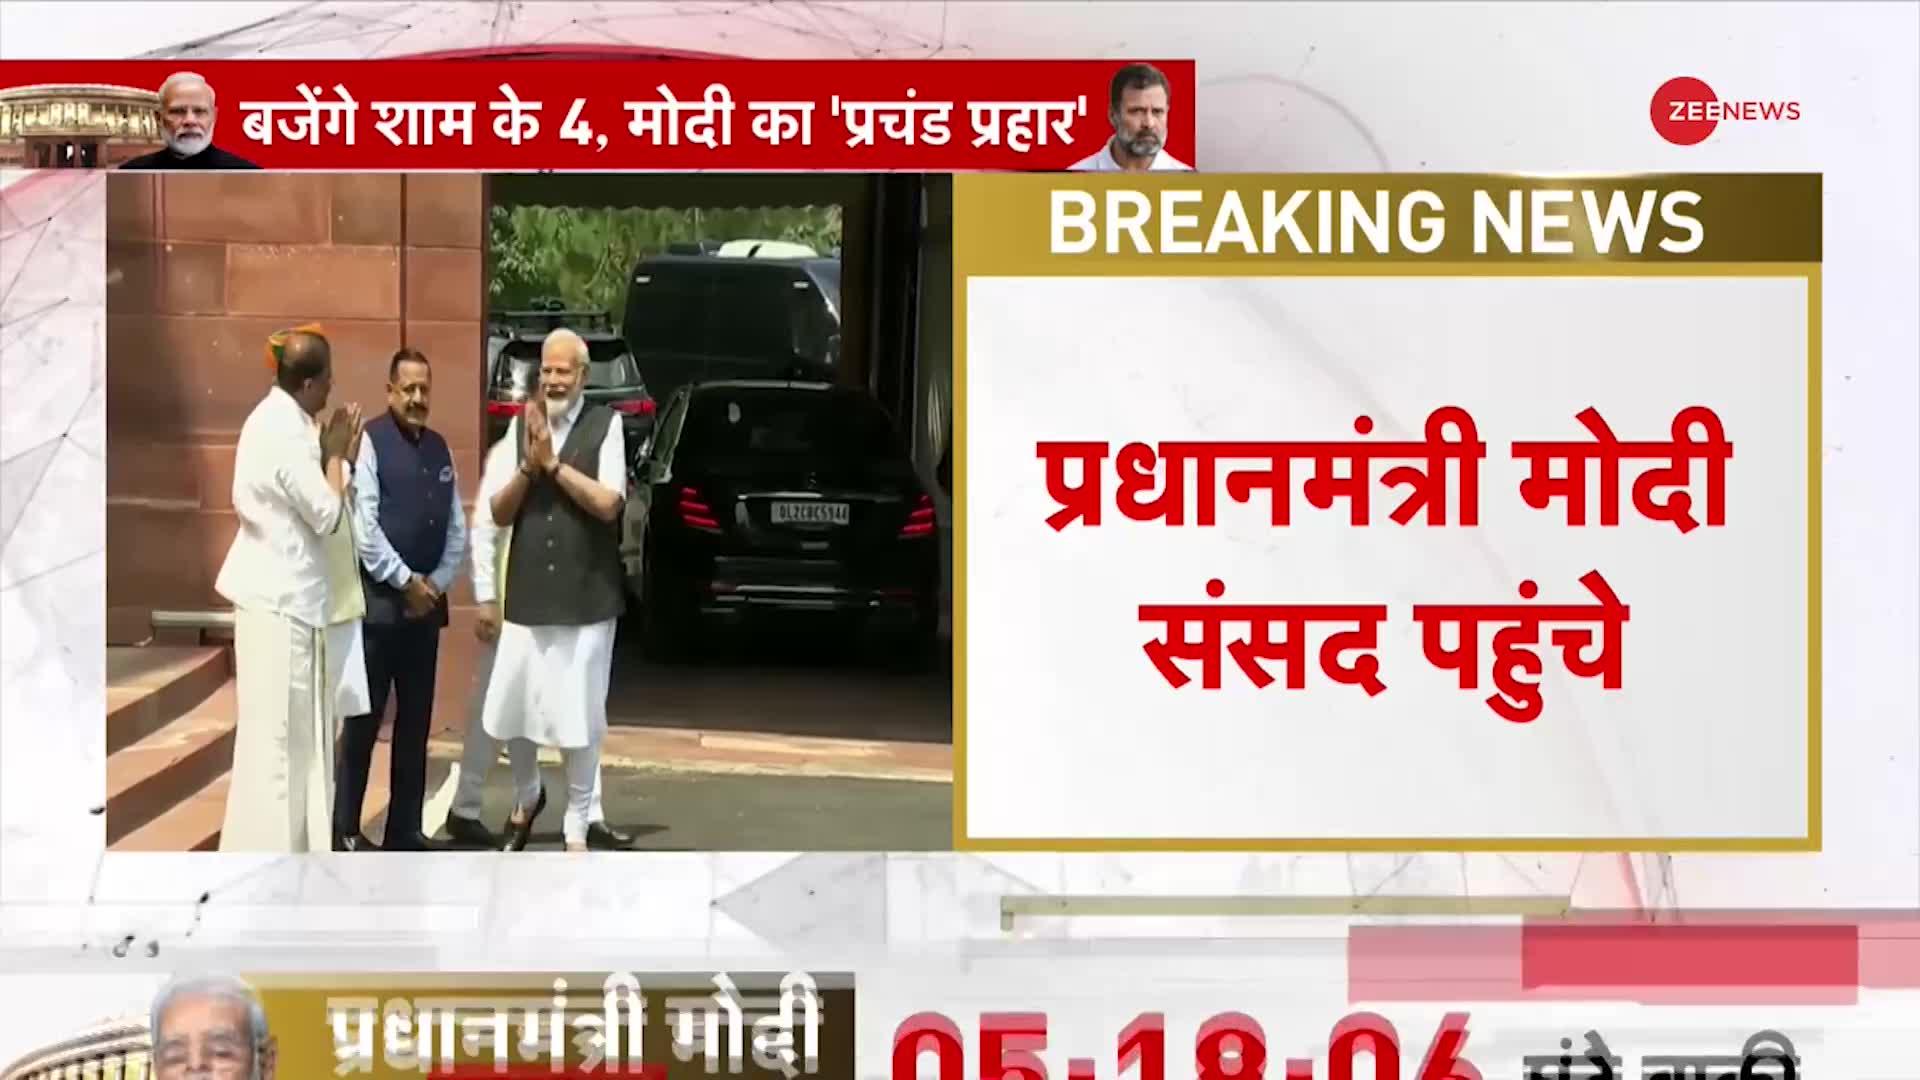 PM Modi News: संसद पहुंचे PM Modi, शाम 4 बजे देंगे विपक्ष के सवालों के जवाब